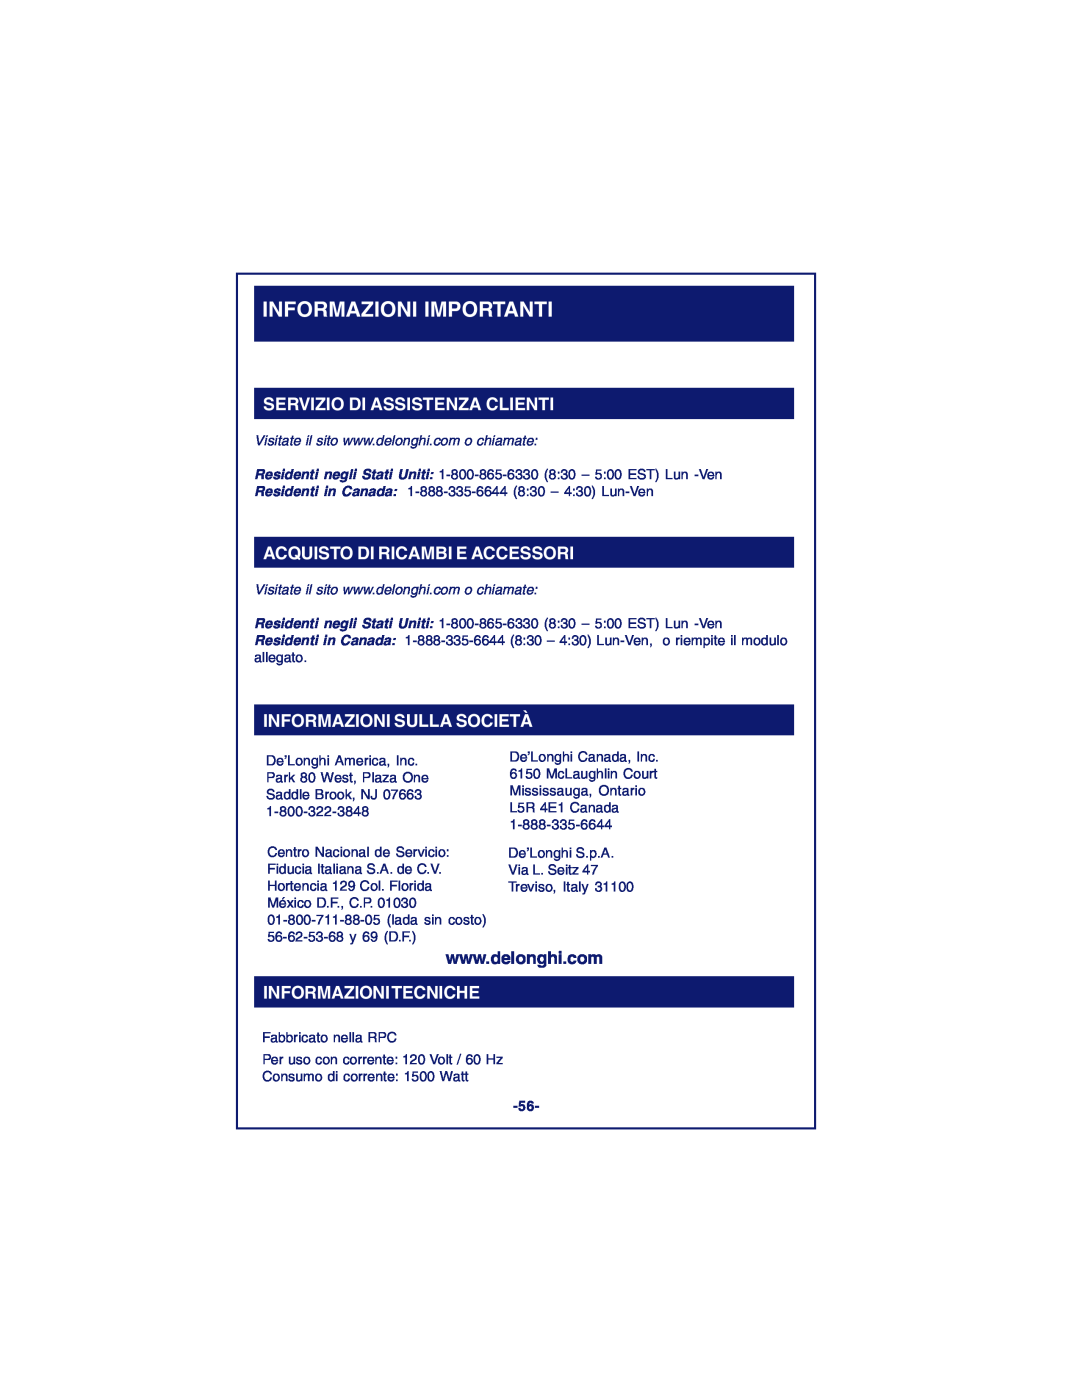 DeLonghi DCM900 instruction manual Informazioni Importanti, Servizio Di Assistenza Clienti, Acquisto Di Ricambi E Accessori 